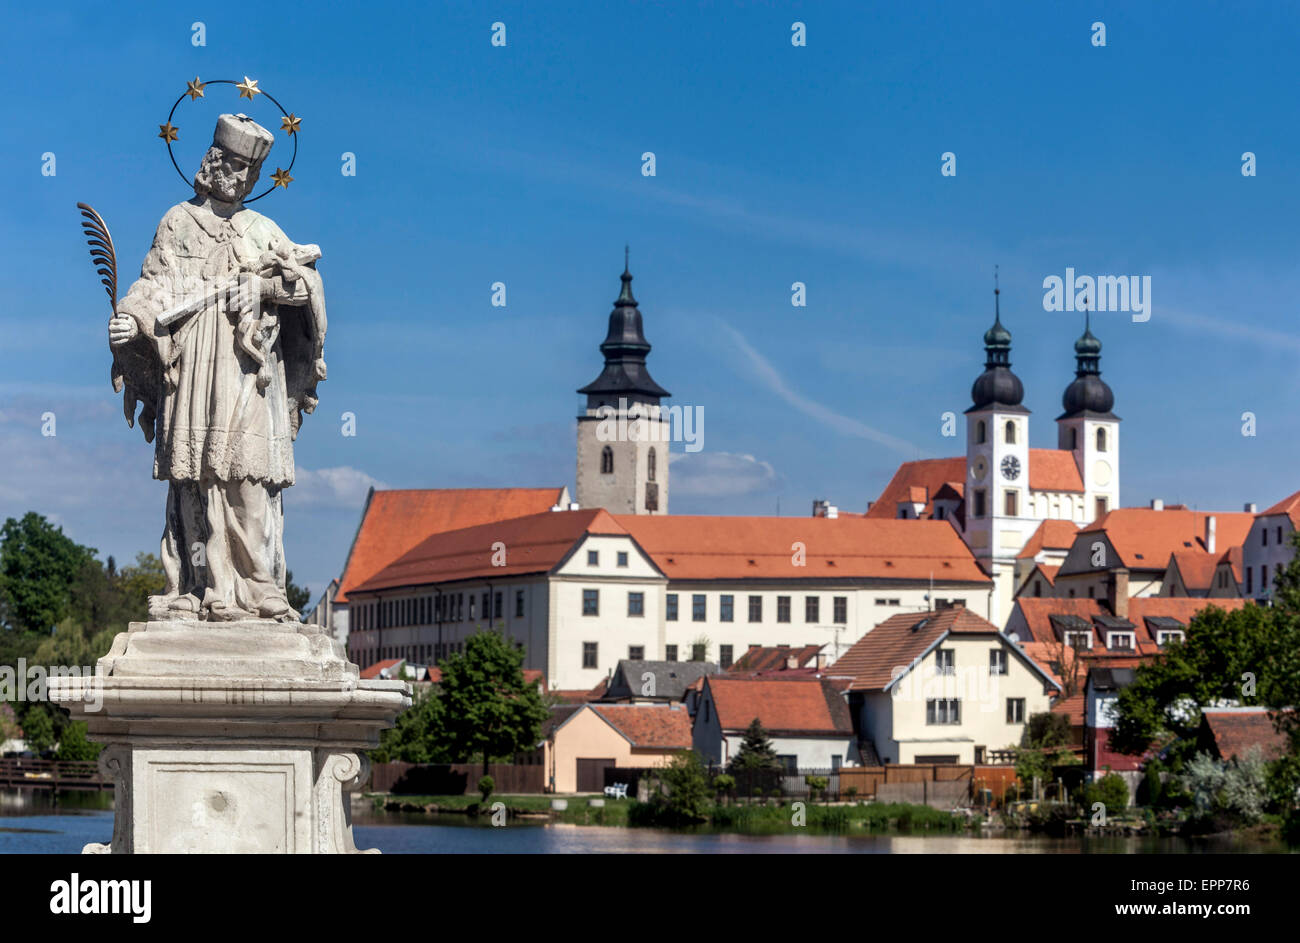 Telc Repubblica Ceca Europa sito patrimonio dell'umanità città ceca statua barocca di San Giovanni Nepomuceno in primo piano Foto Stock